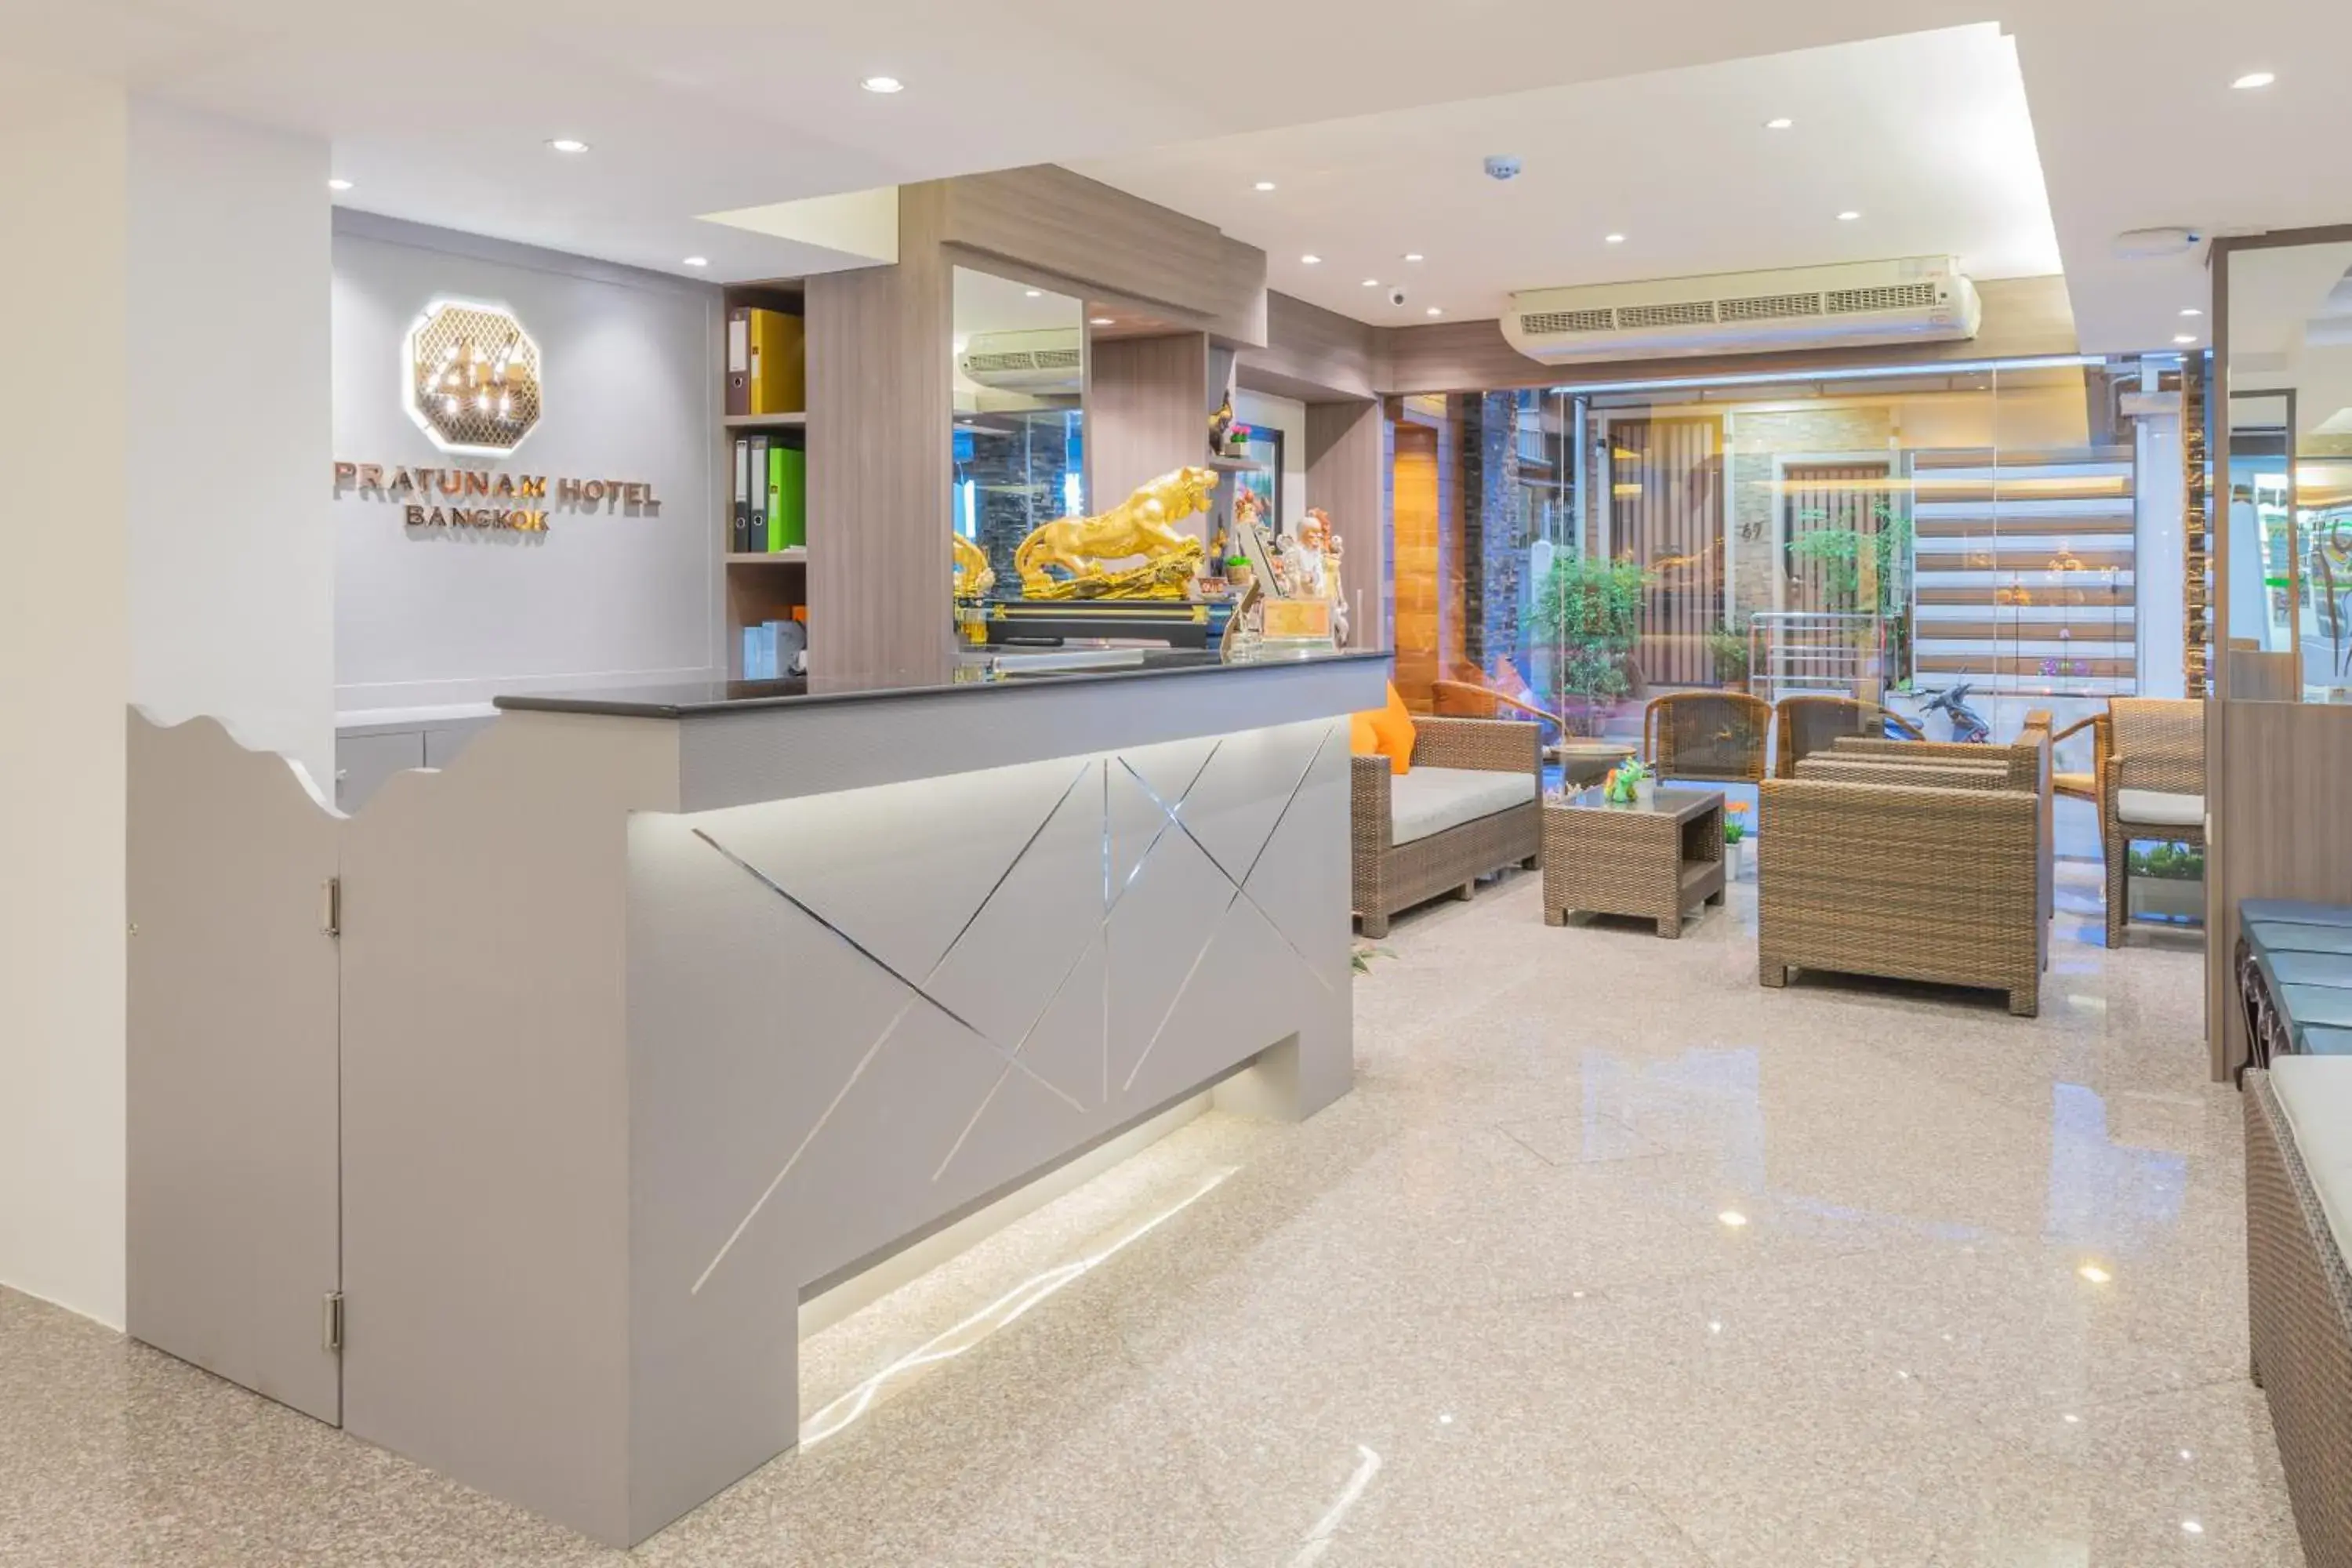 Lobby or reception, Lobby/Reception in 4M Pratunam Hotel